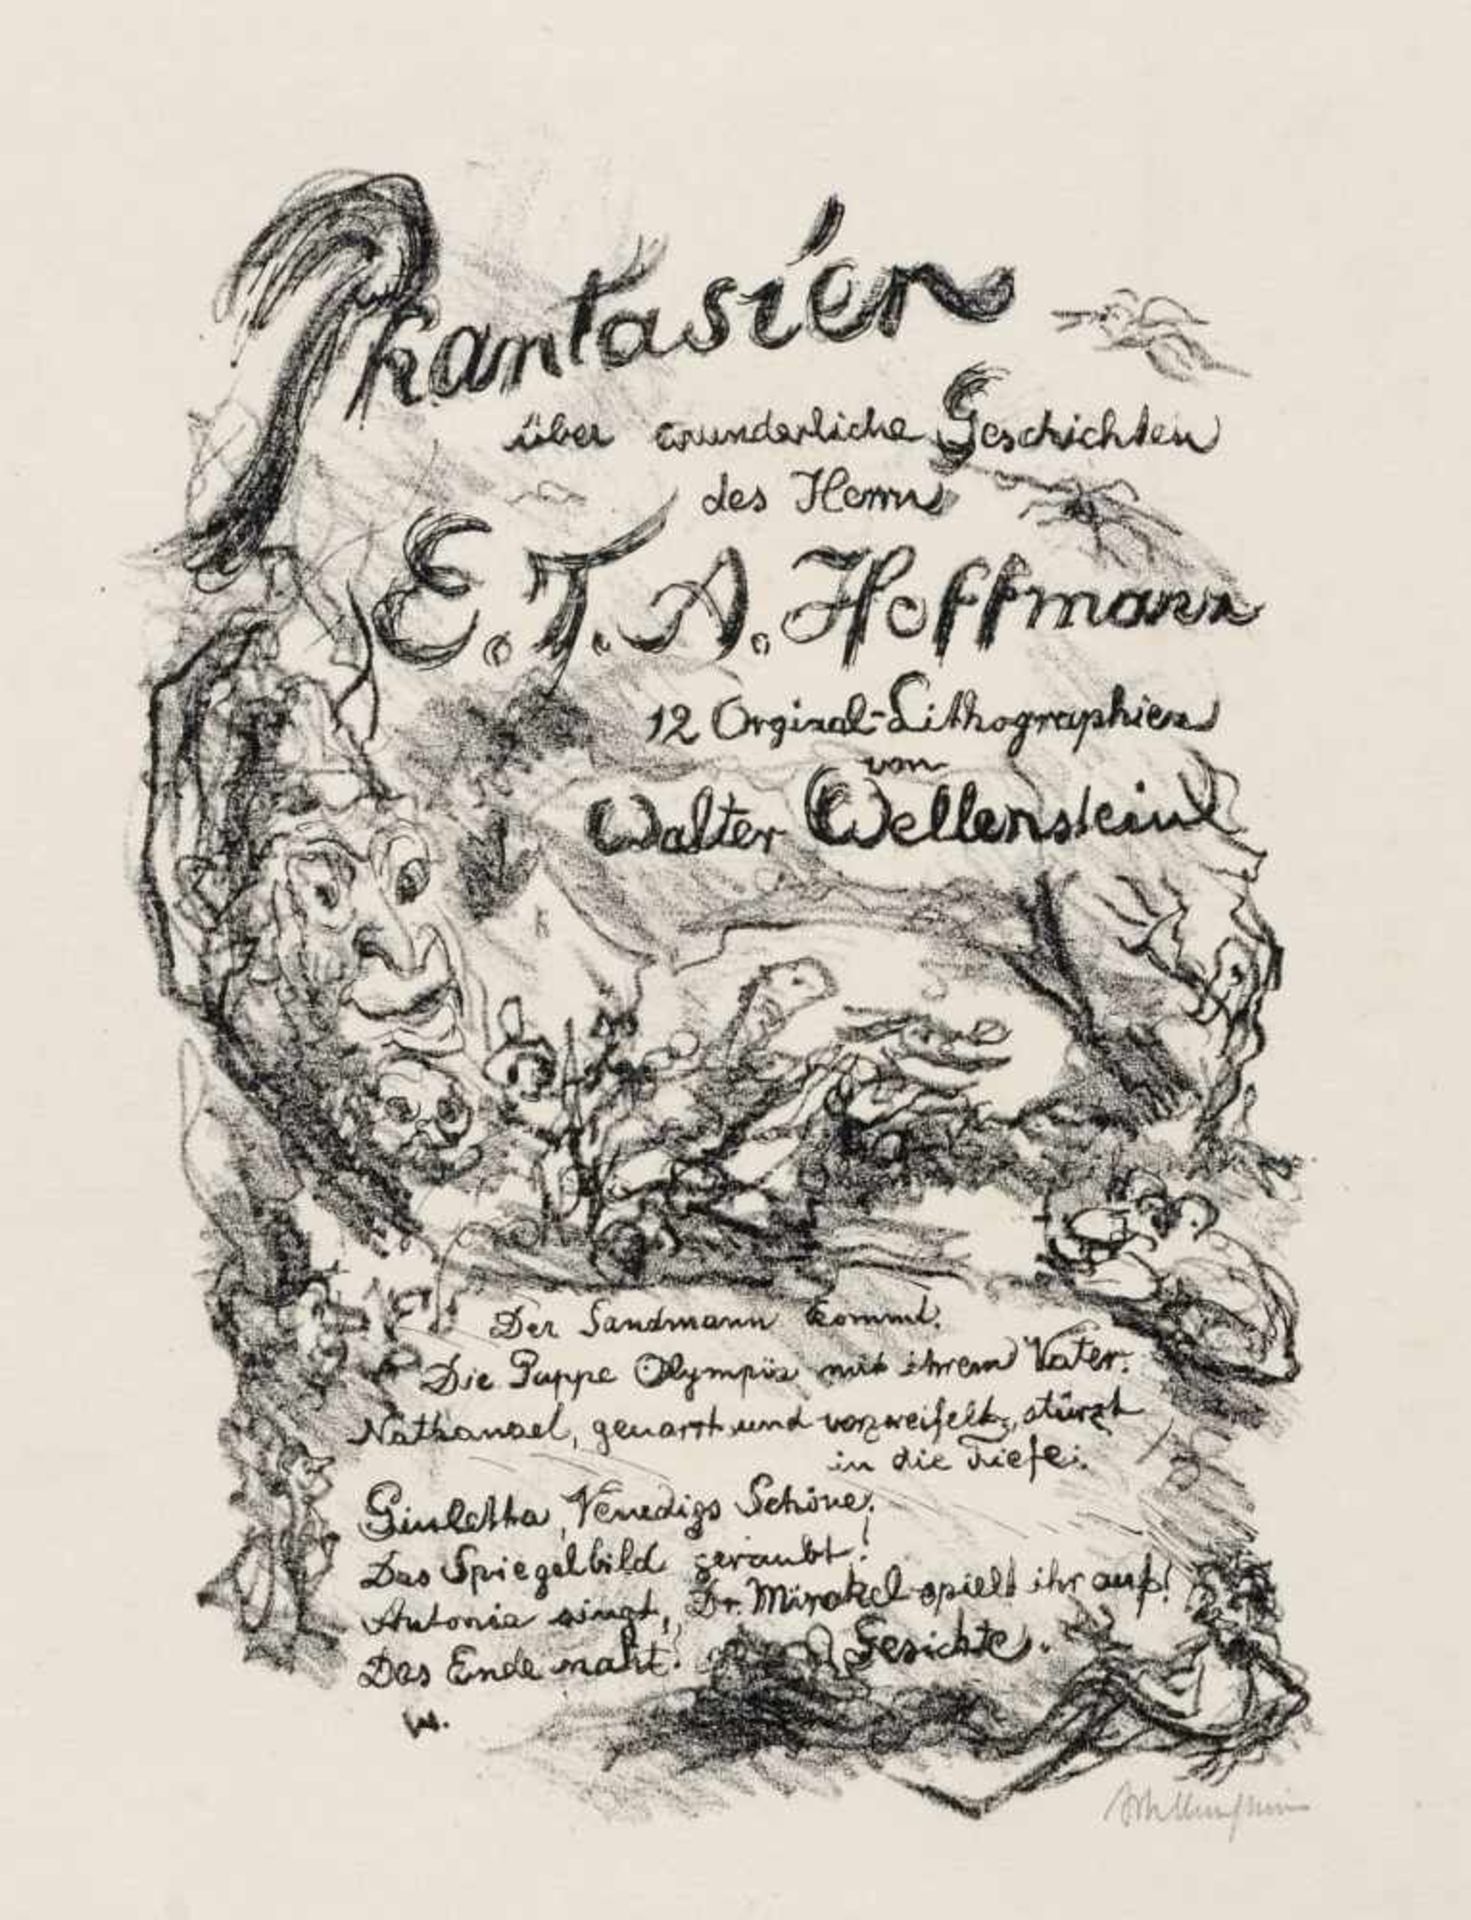 Walter Wellenstein "Phantasien über wunderliche Geschichten des Herrn E.T.A. Hoffmann" 1923.